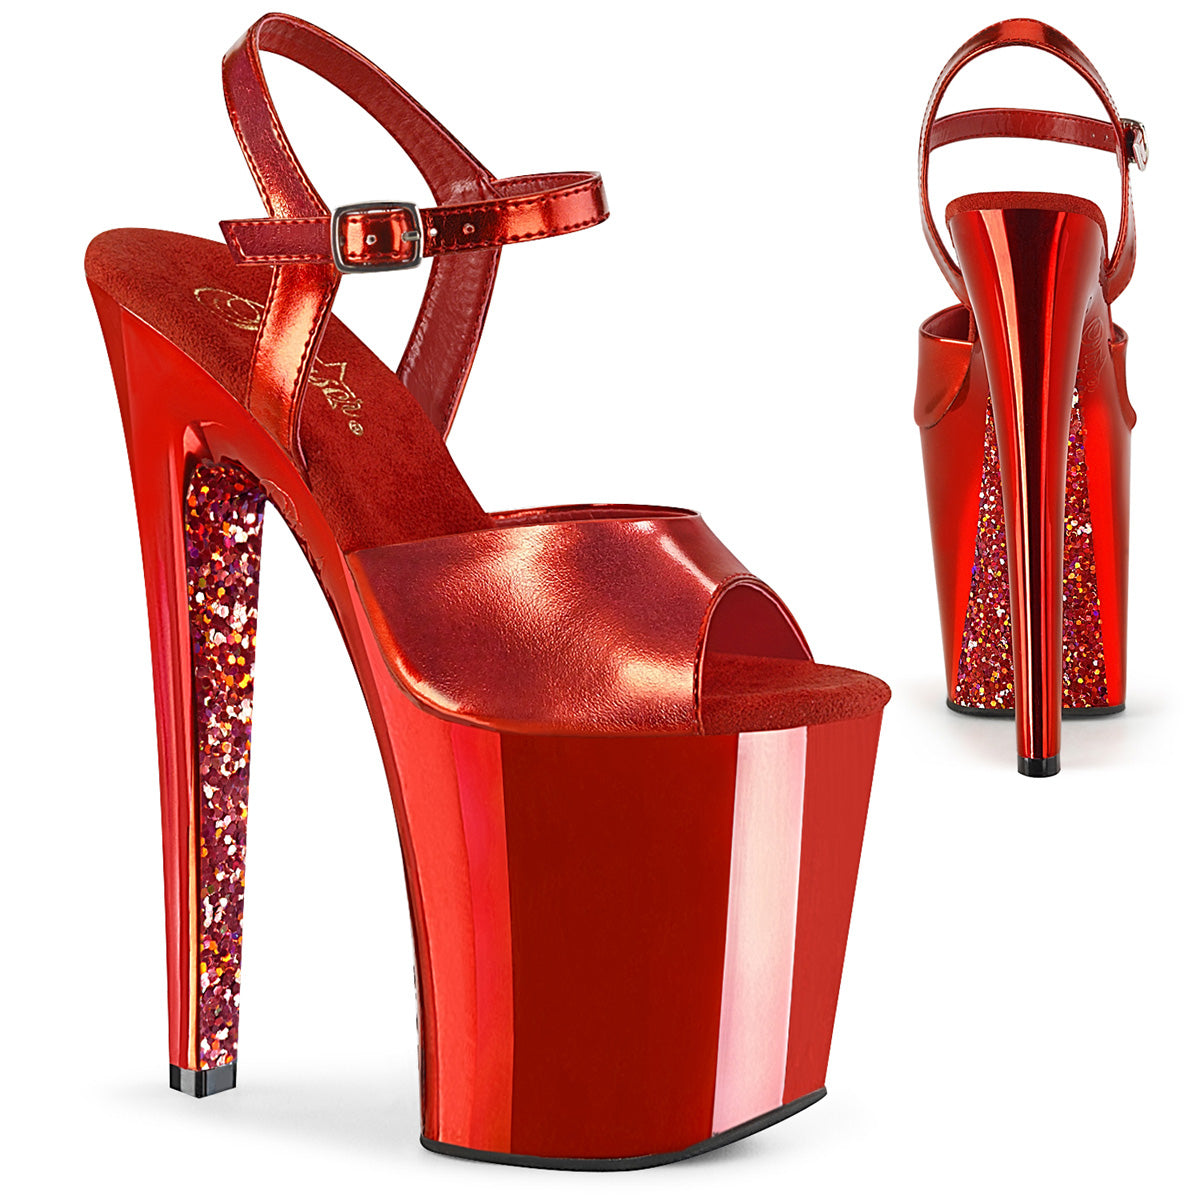 Pleaser Sandali da donna XTREME-809TG rosso metallico PU / rosso cromato